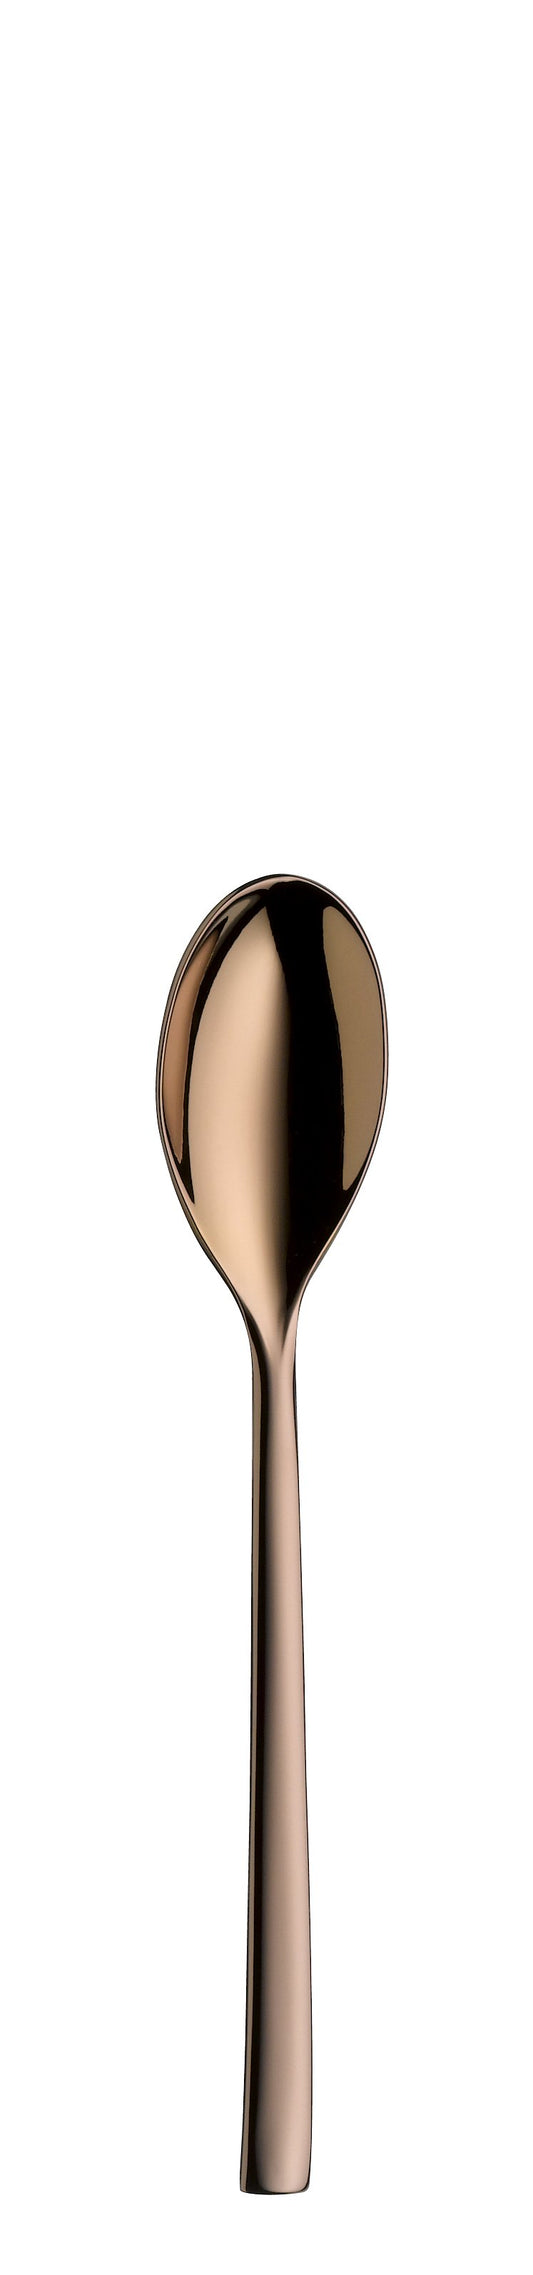 Coffee spoon TALIA PVD copper 157mm